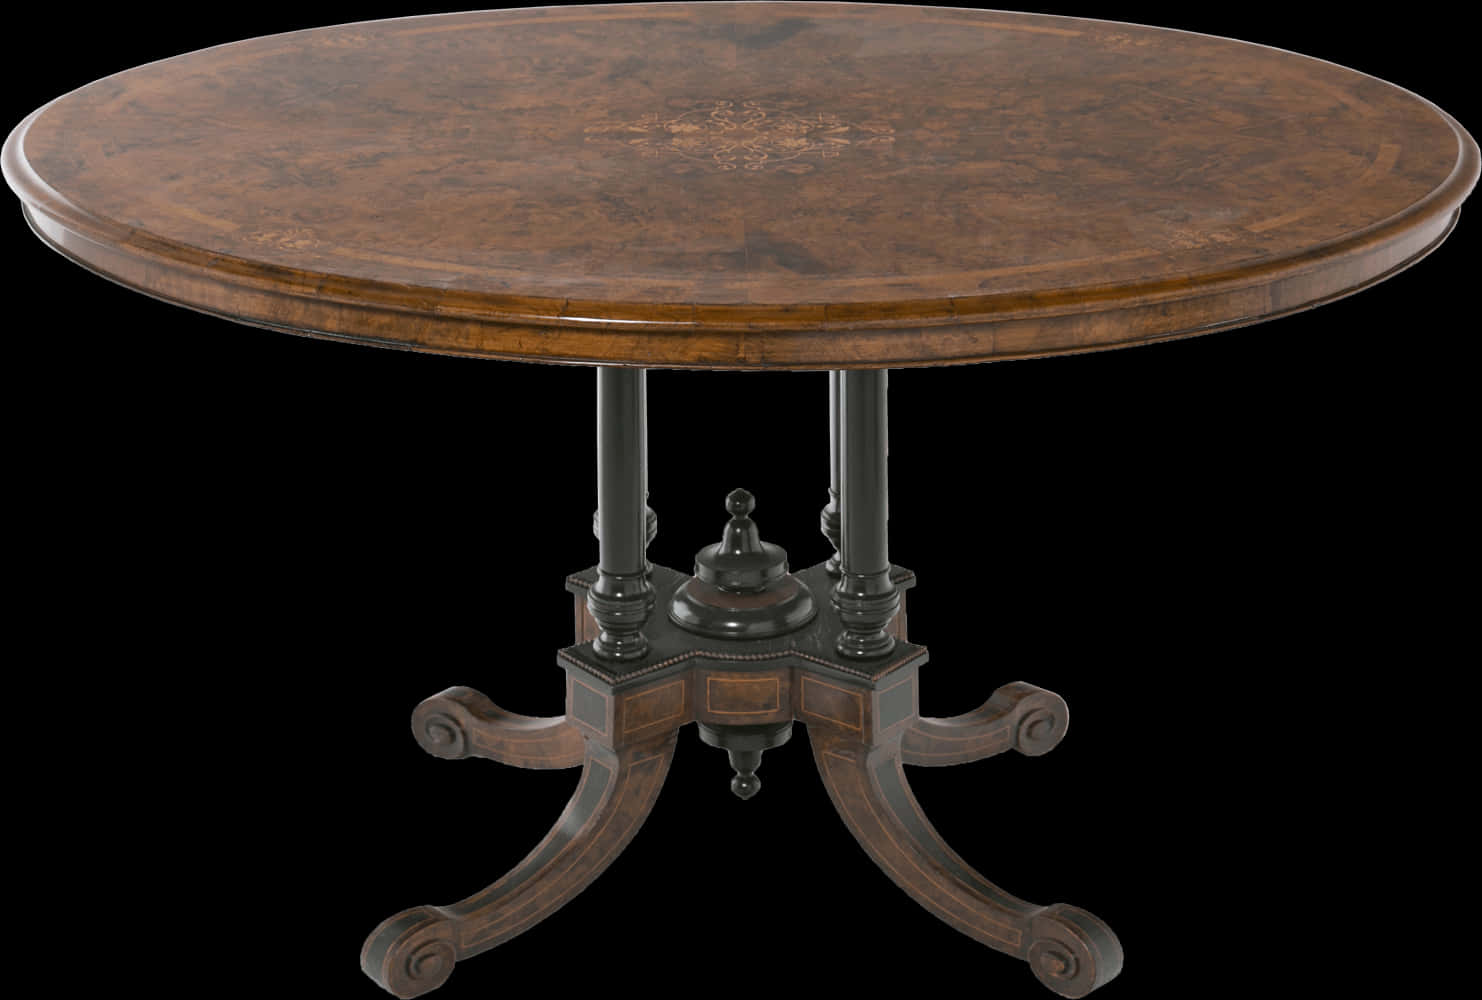 Antique Circular Wooden Table